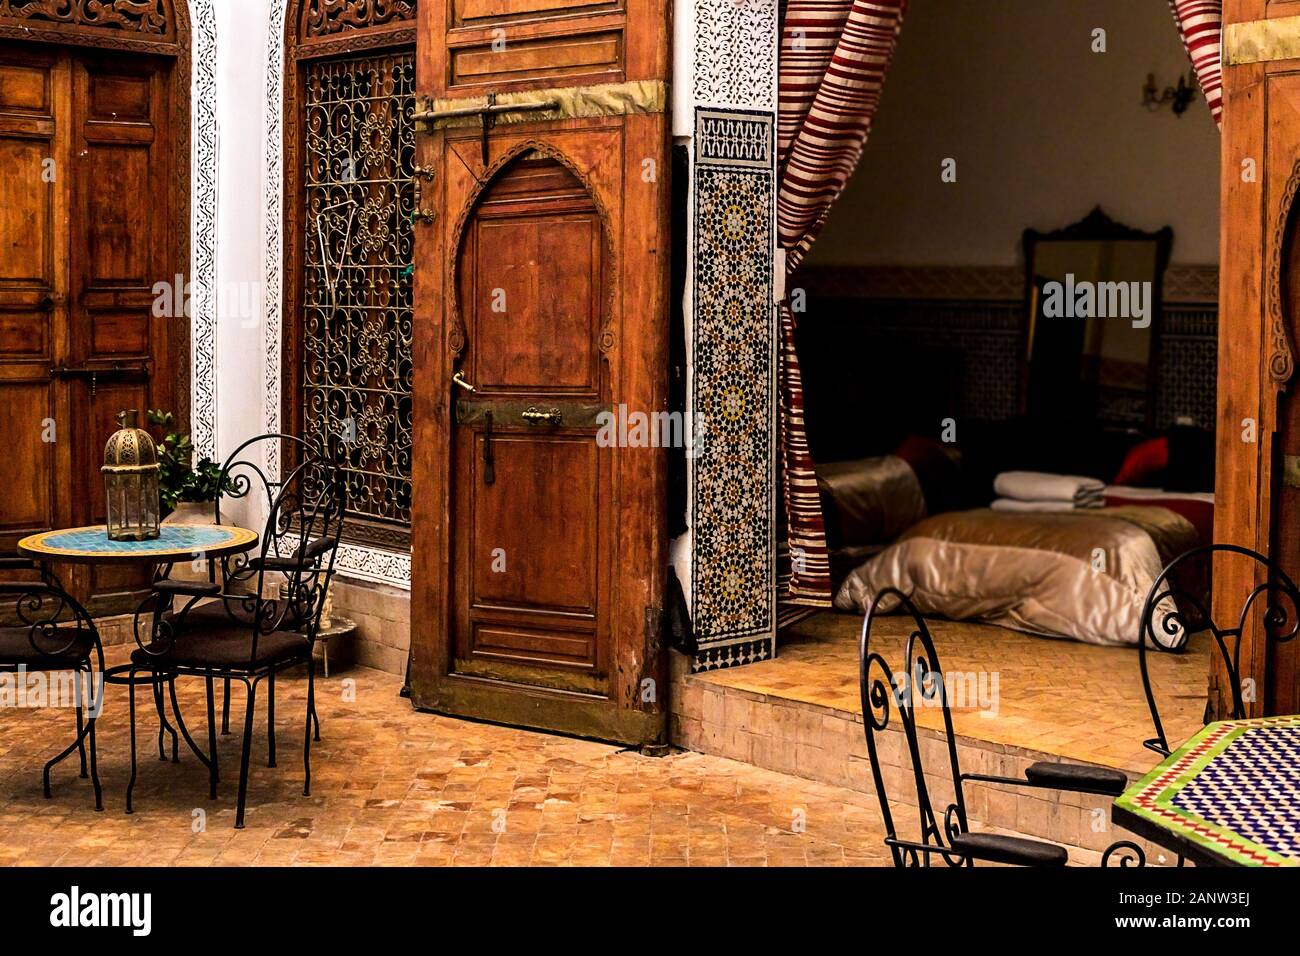 L'arabe traditionnel lieu de repos, salle de séjour avec des lampes, fauteuil et décoration Banque D'Images